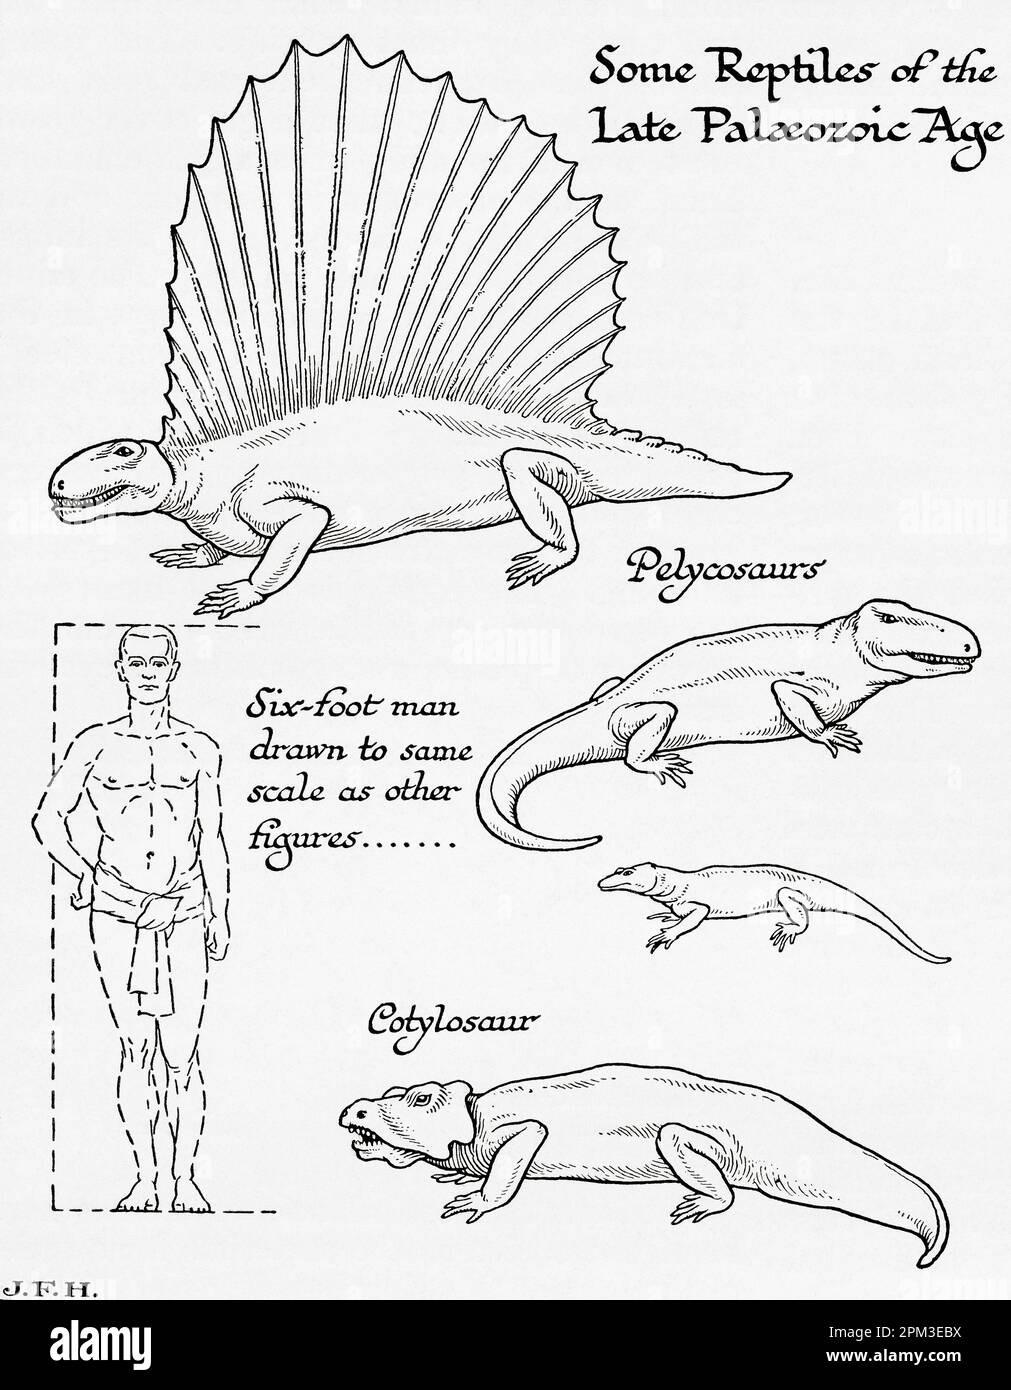 Algunos reptiles del Paleozoico tardío o Paleozoico. Se muestra en el diagrama un hombre de seis pies dibujado a la misma escala que otras figuras. Del libro Esquema de la Historia por H.G. Wells, publicado en 1920. Foto de stock